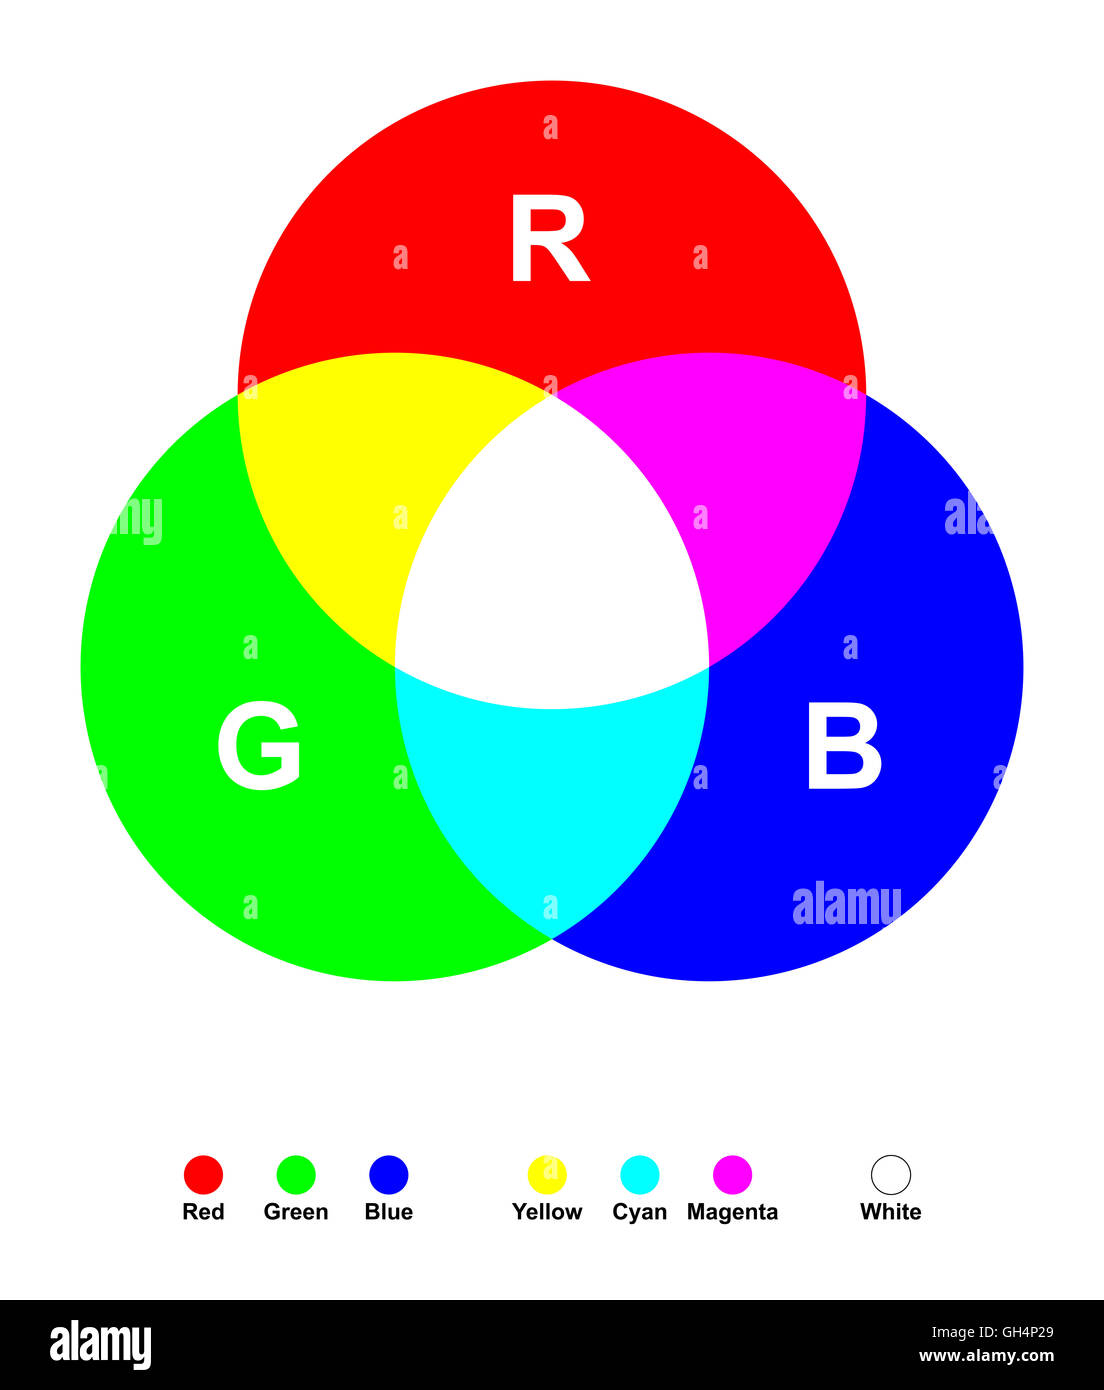 La mezcla aditiva de colores. Los tres colores de luz primarios rojo, verde y azul mezclados produce blanco. Foto de stock